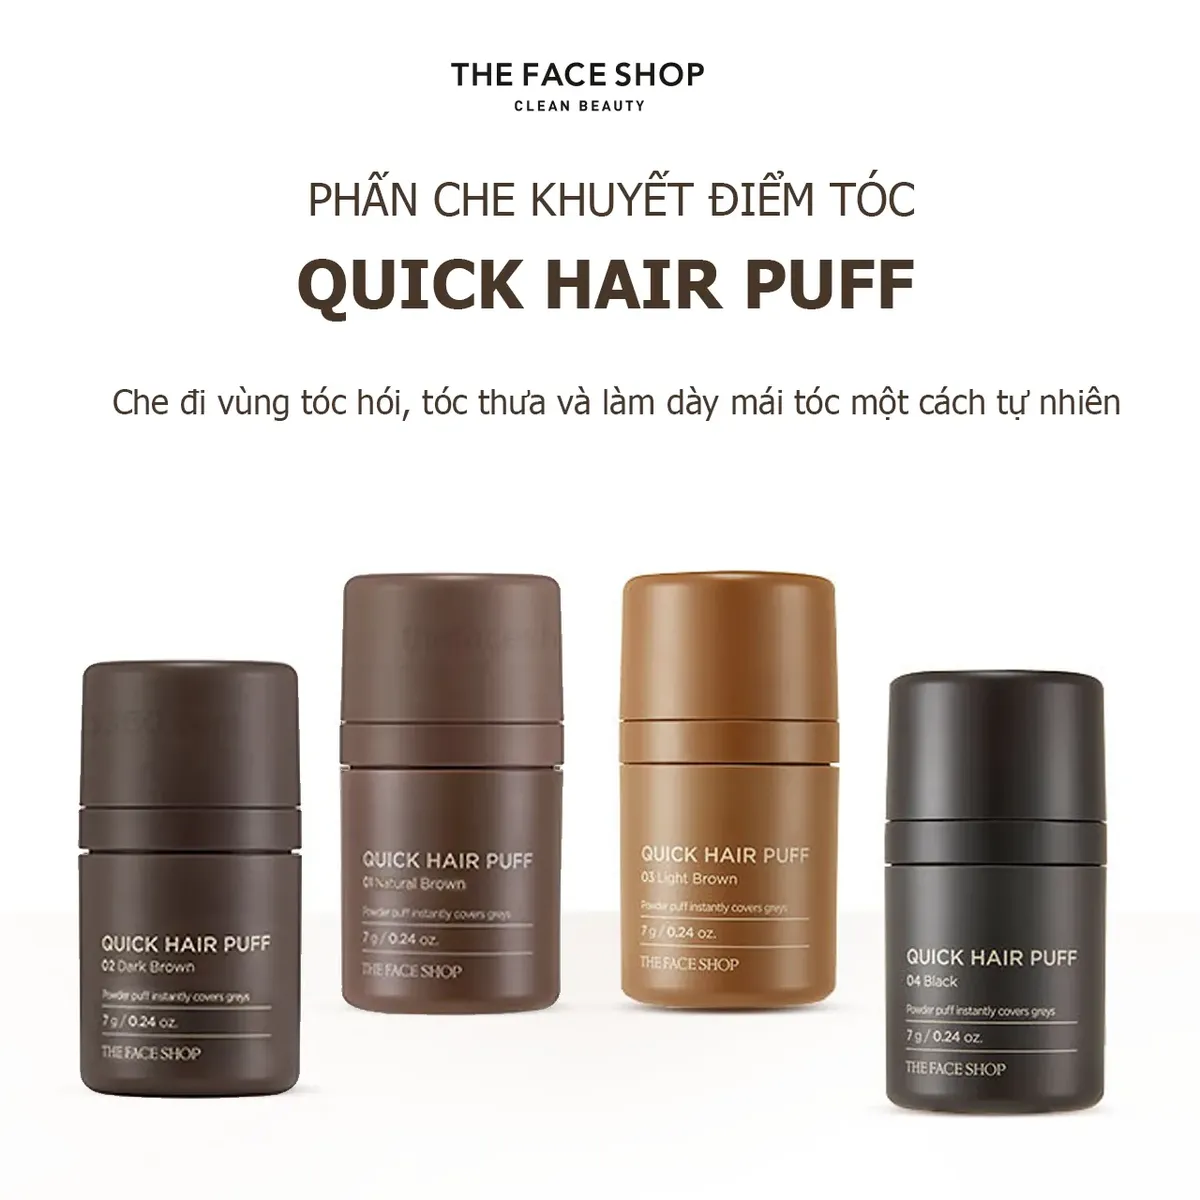 phan-che-khuyet-diem-toc-the-face-shop-quick-hair-puff-7g-4